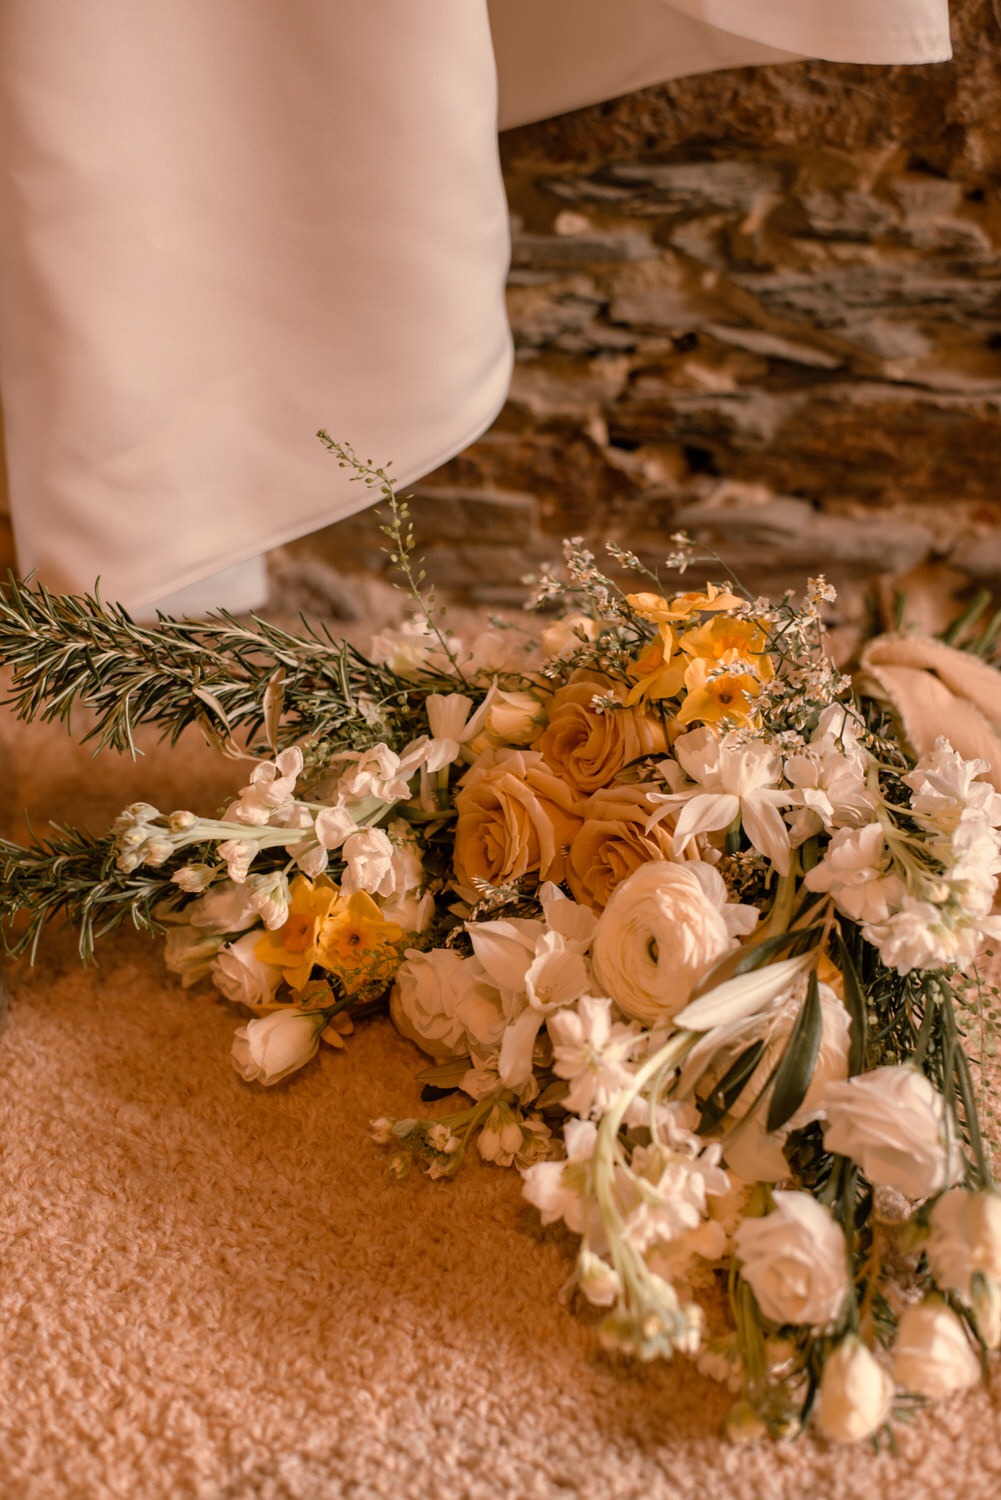 Le beau bouquet de la mariée imaginé et confectionné par Anais de chez Reine et Rose fleuriste